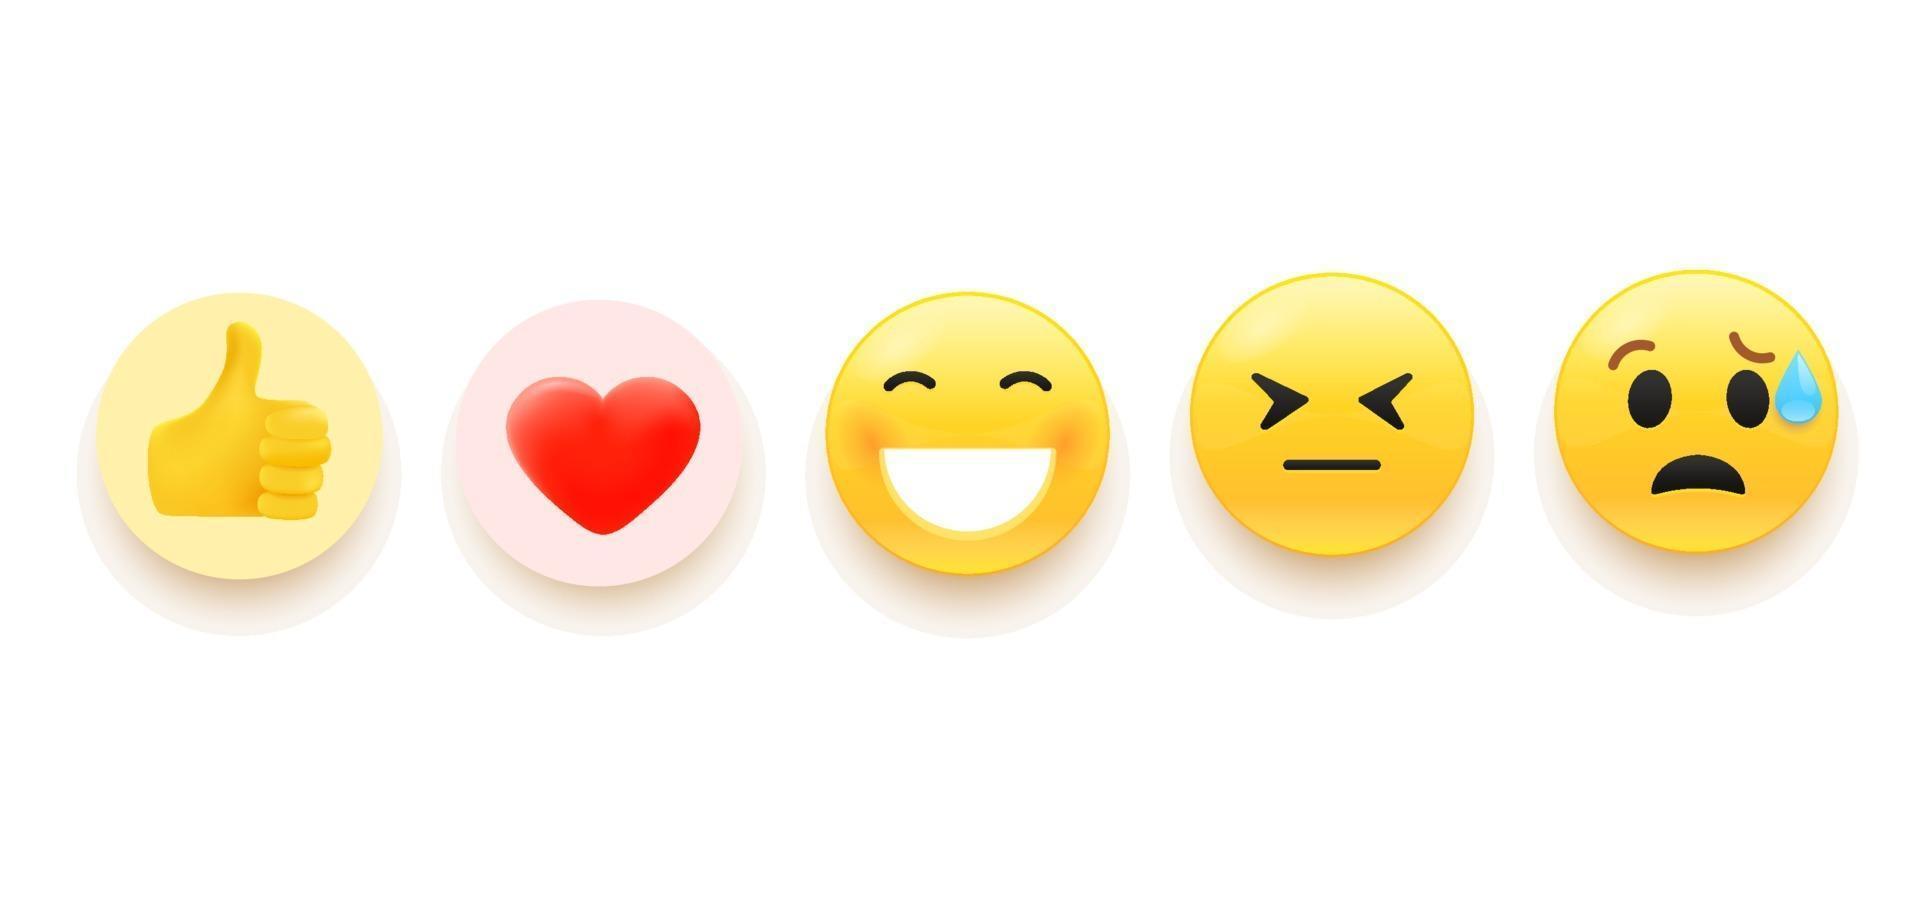 Vector emoji set for social media